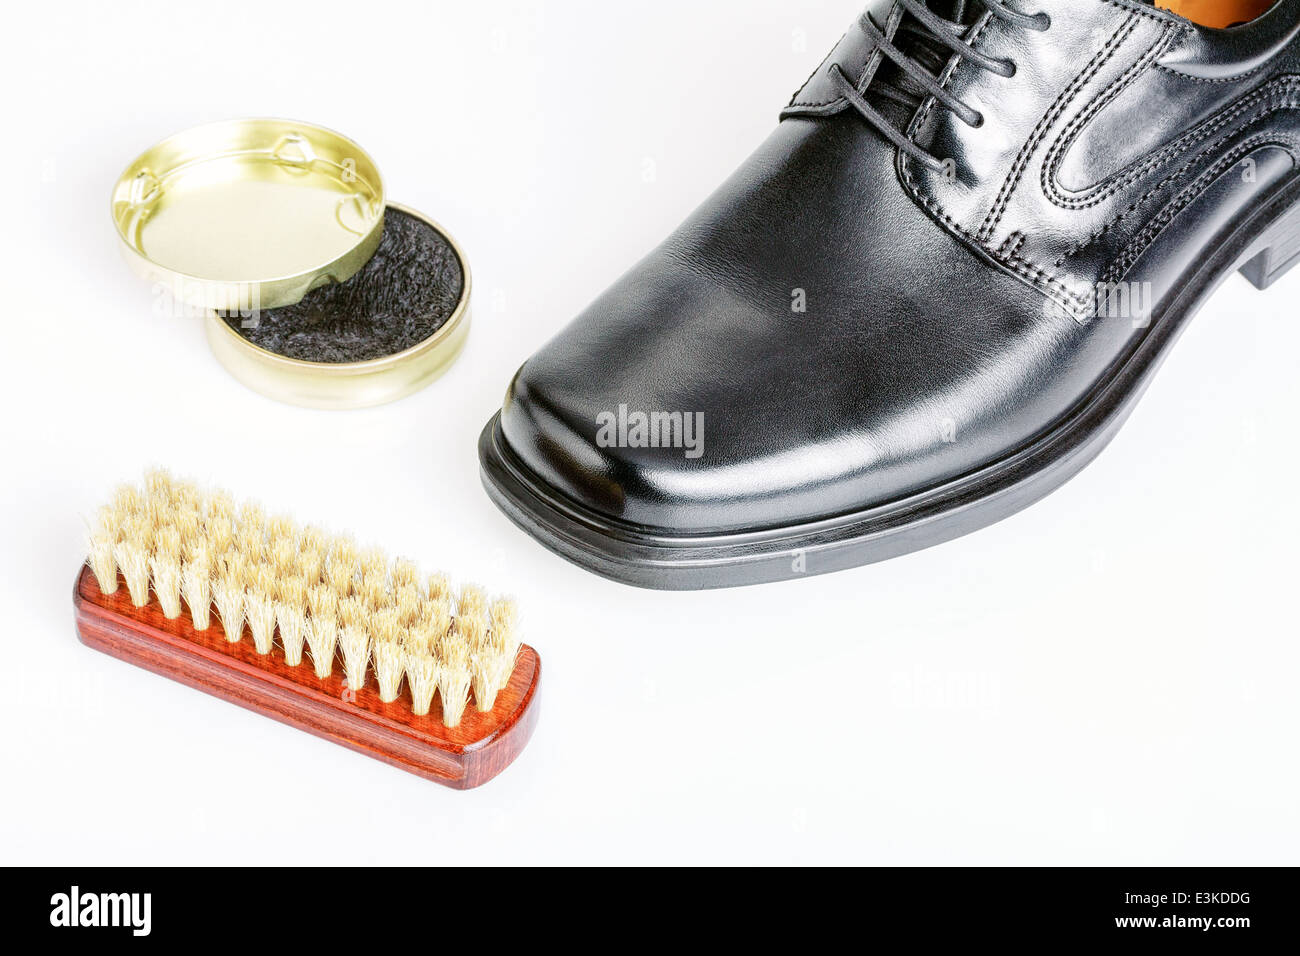 Classic shiny black men's shoe, boot polish and brush Stock Photo